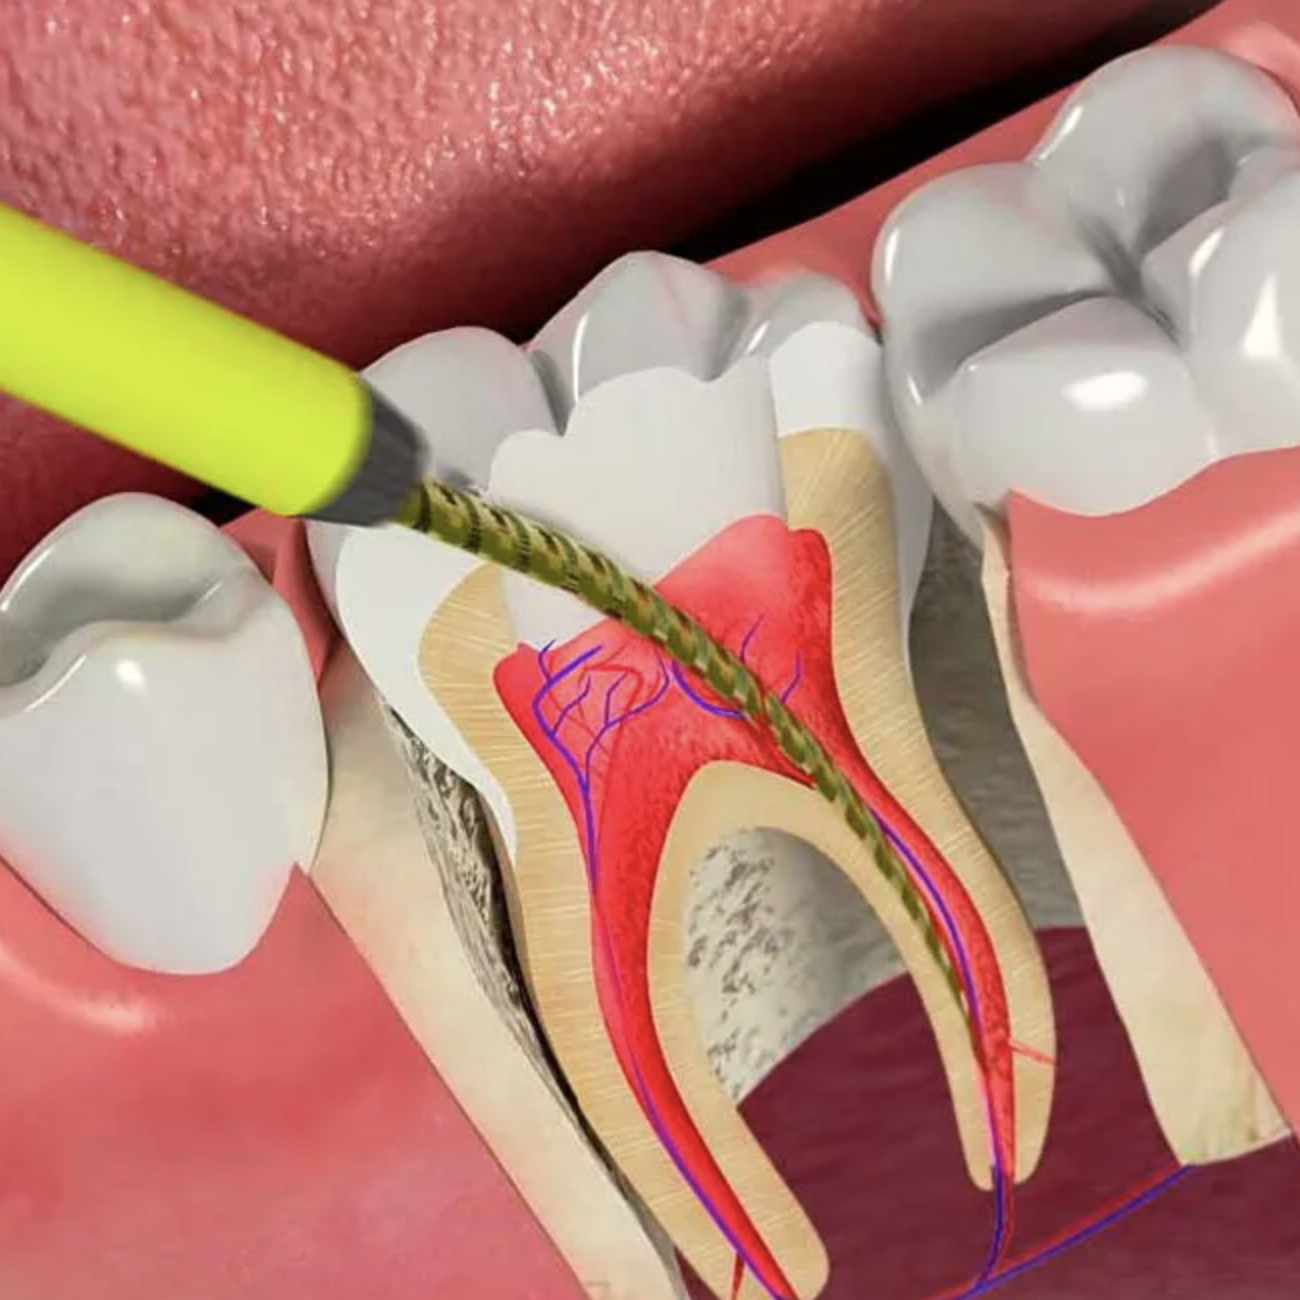 Эндодонтия в стоматологии. Пломбирование зуба после лечения каналов